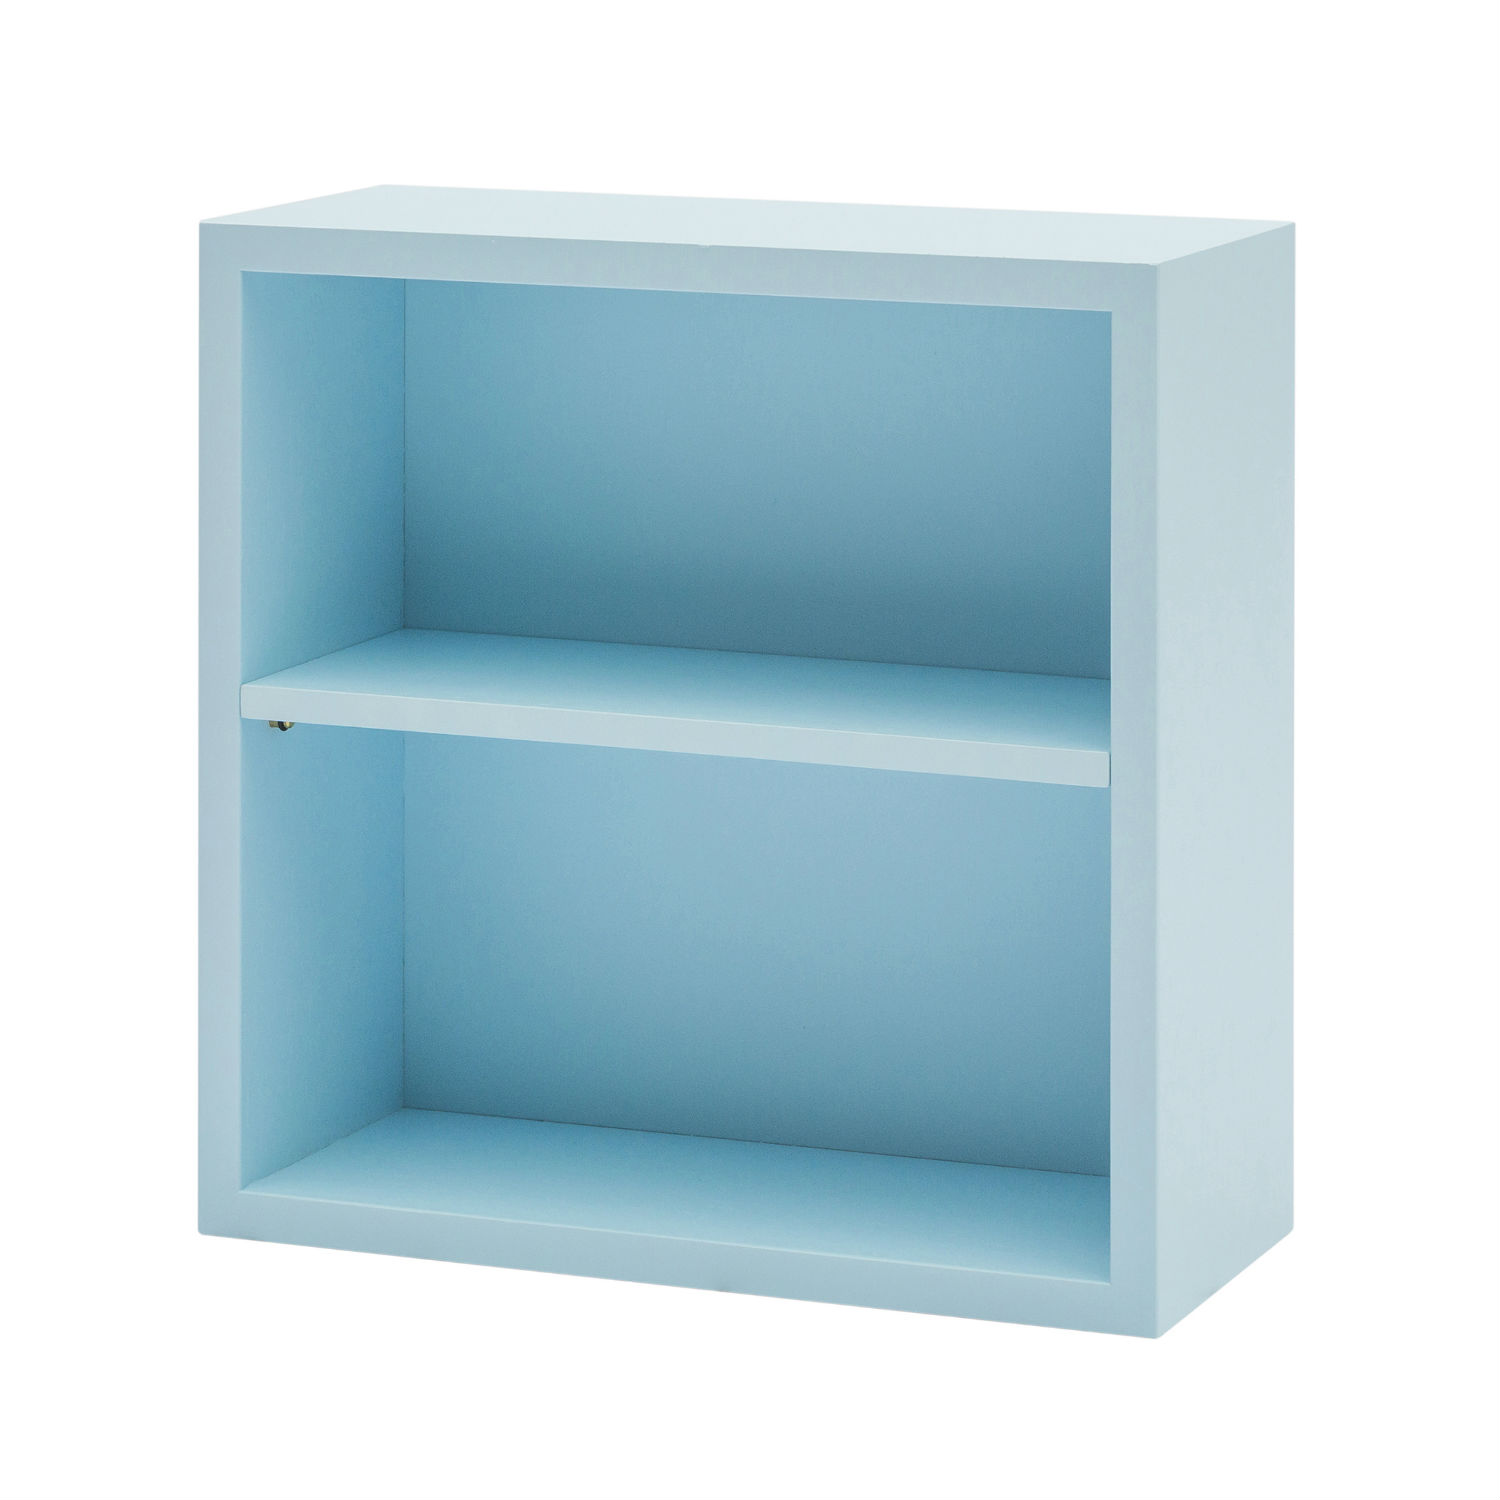 Mobile Box Quadrato Provenzale In Legno Colore Azzurro Laccato (disponibili anche con altri colori)